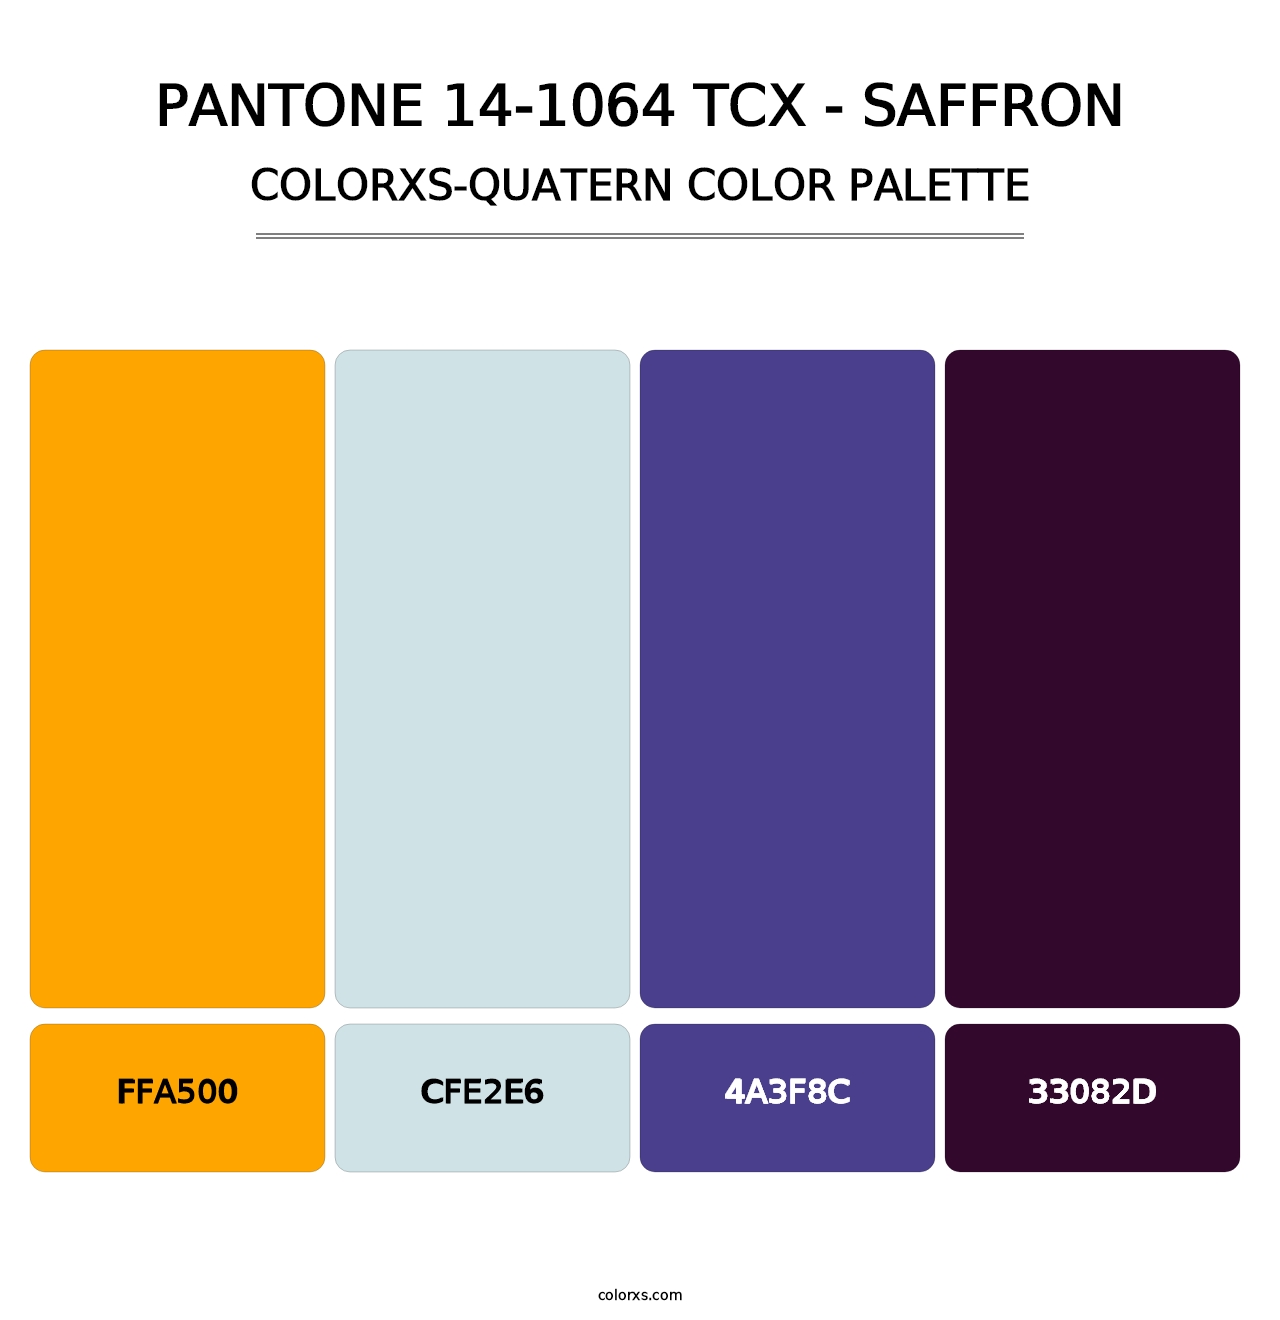 PANTONE 14-1064 TCX - Saffron - Colorxs Quatern Palette